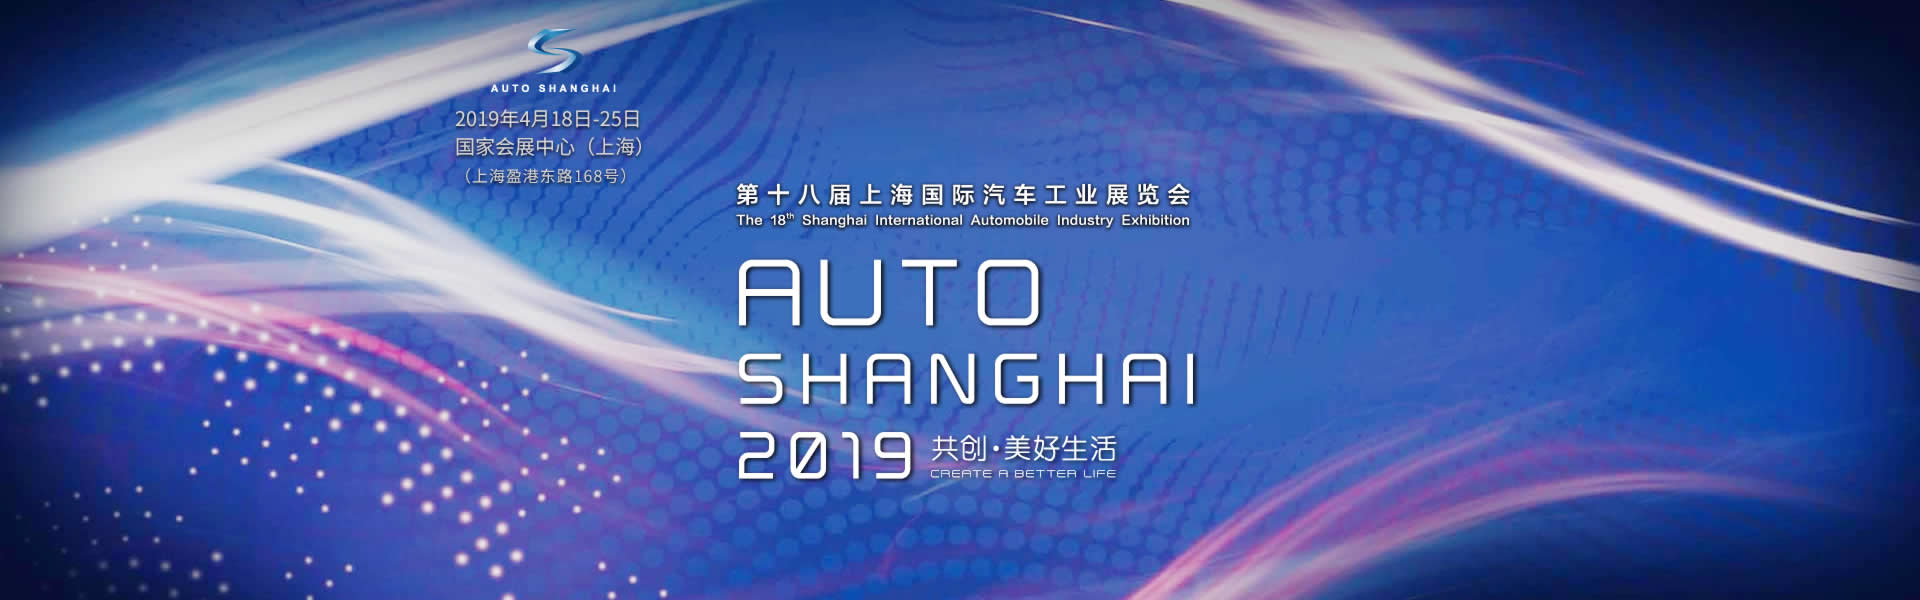 中国重汽轻卡展台 共创·美好未来 第十八届上海国际汽车工业展览会